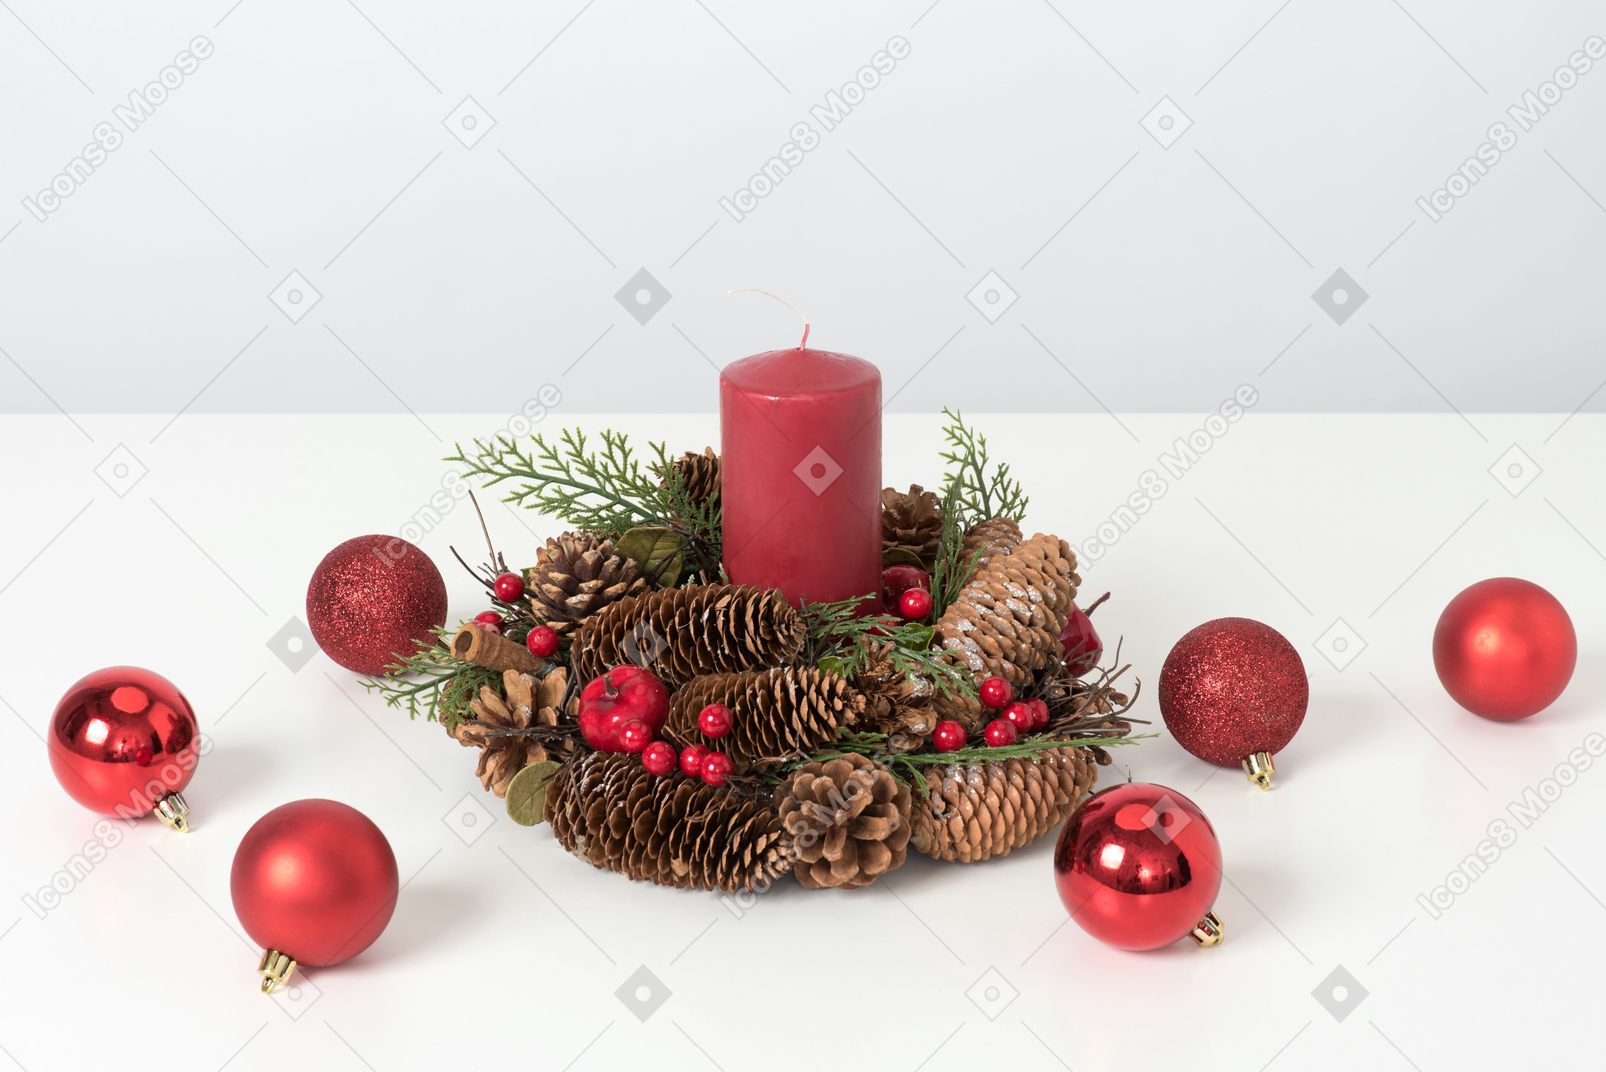 Christmas decorations near christmas wreath